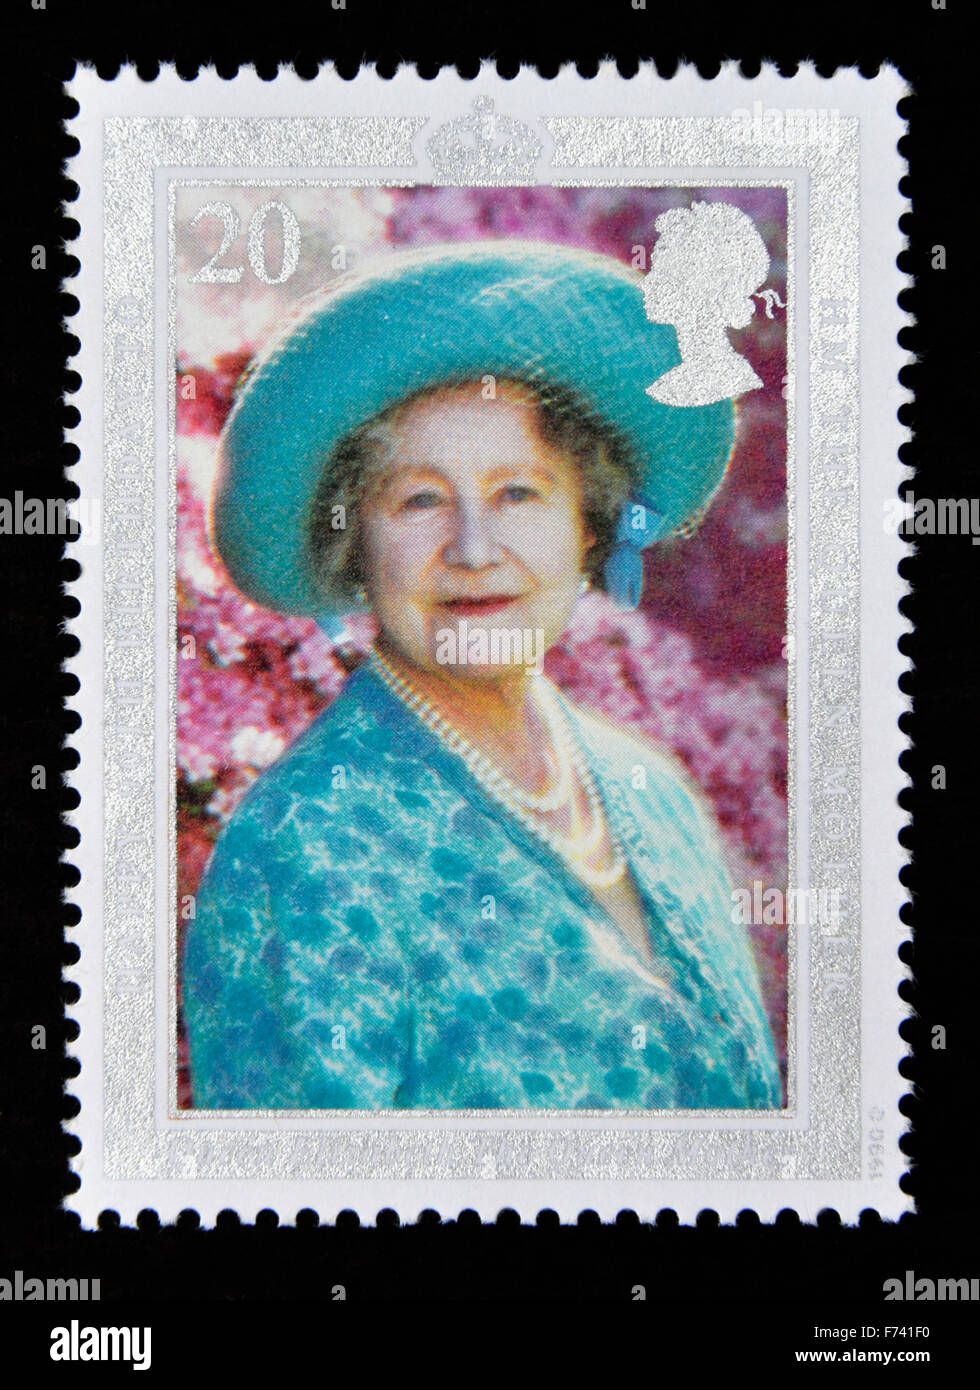 Postage stamp. Great Britain. Queen Elizabeth II. 1990. 90th.Birthday of Queen Elizabeth the Queen Mother. 20p. Stock Photo